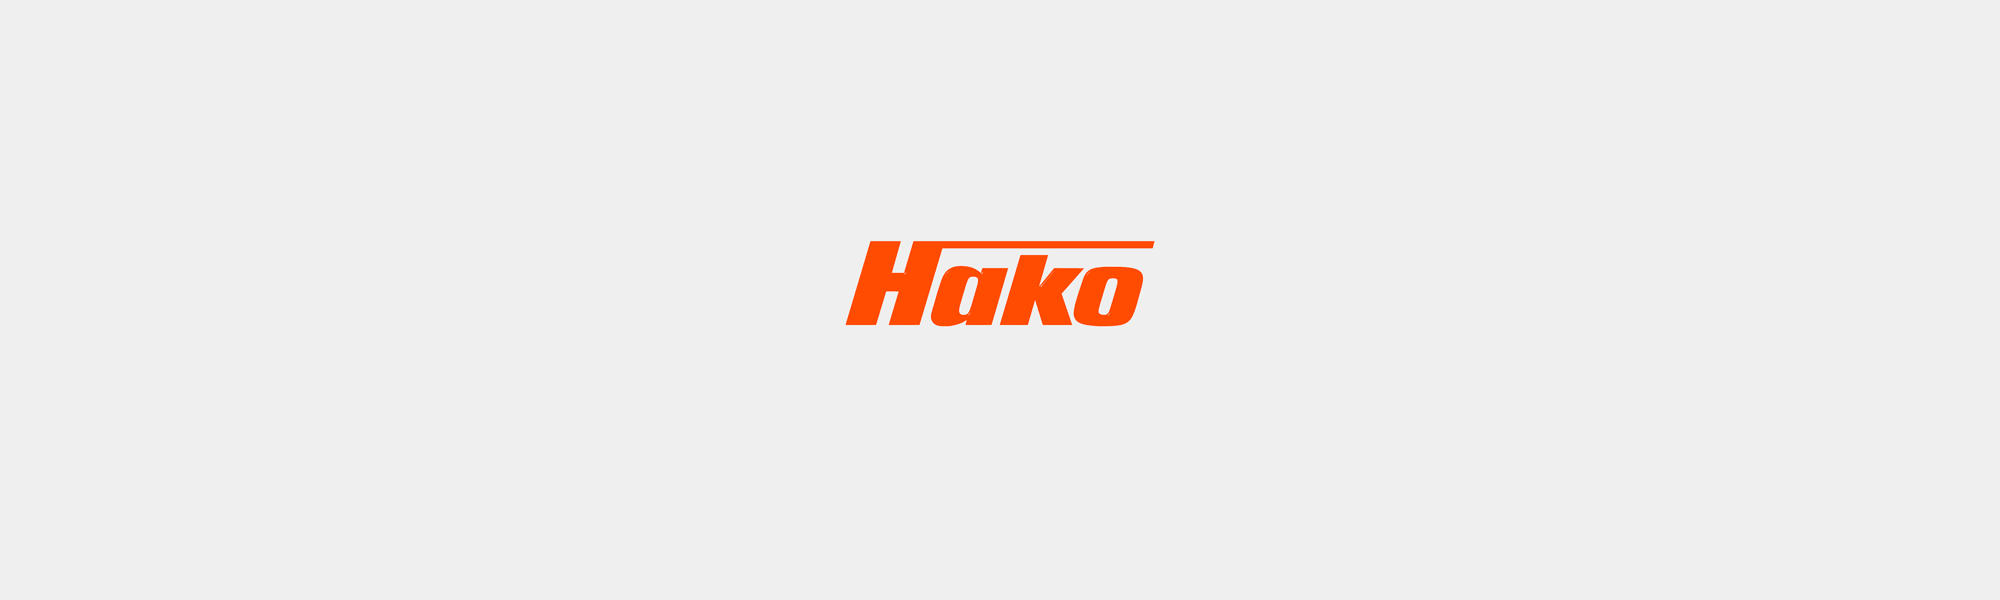 Le reconditionnement : l'expertise professionnelle Hako - Hako France